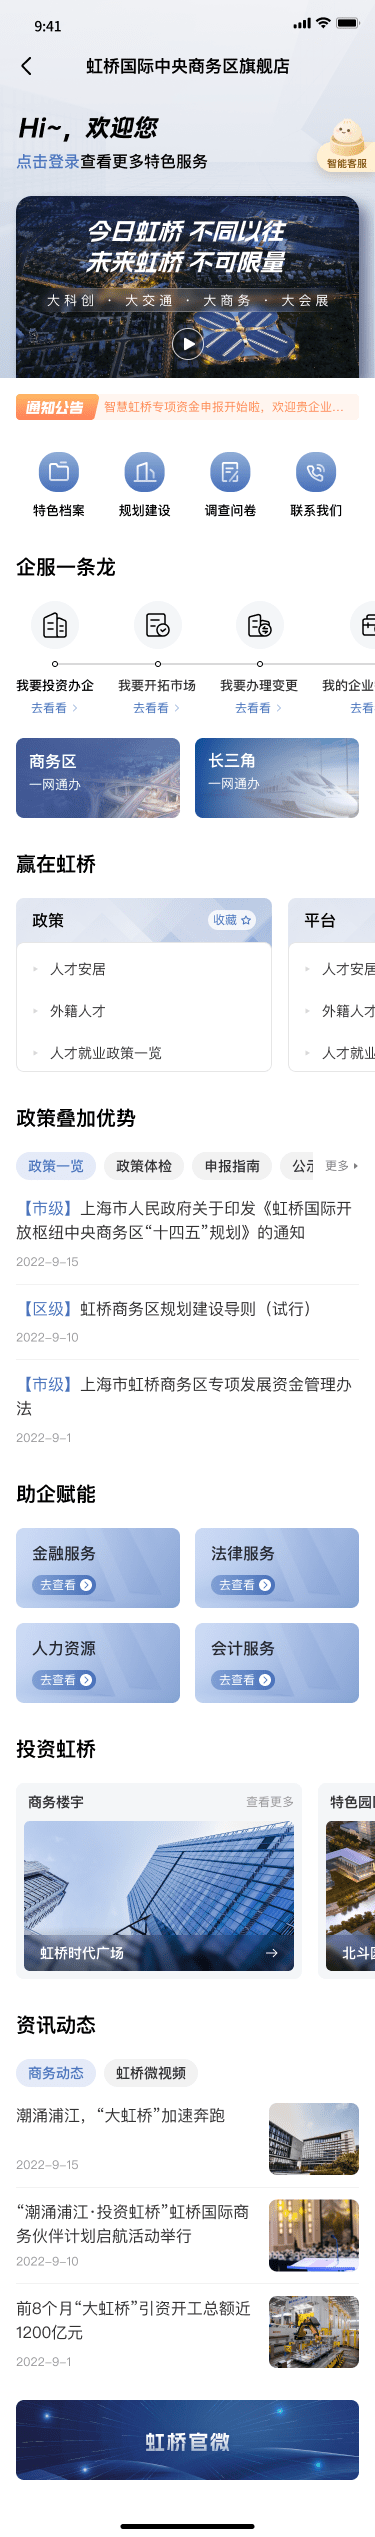 上海虹桥中央商务区一网通办平台UI-UI/UX-到位啦UI